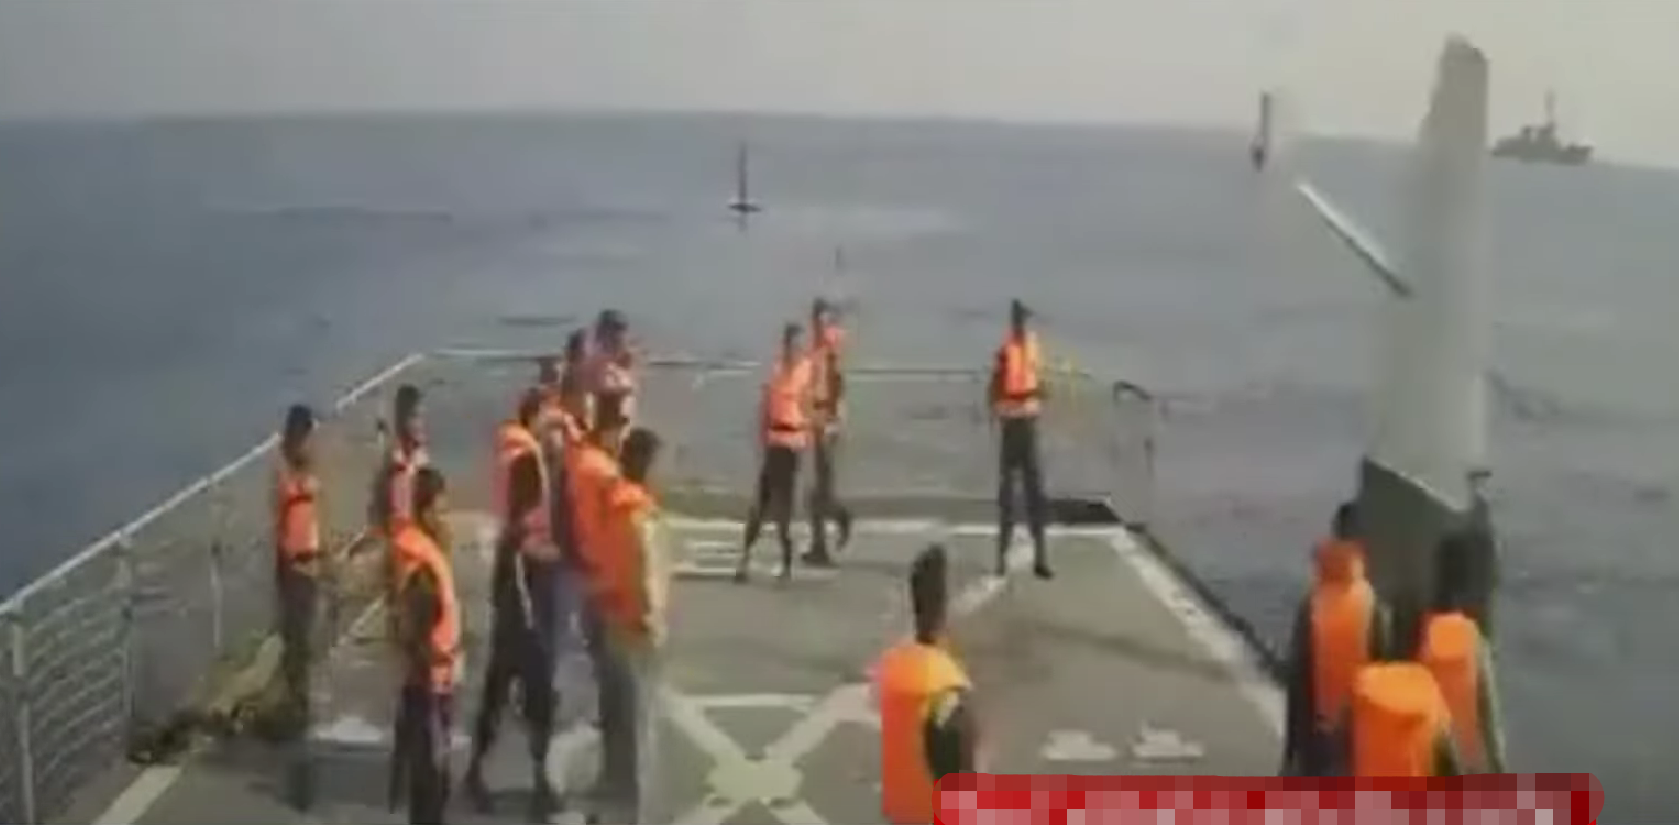  伊朗人员将捕获的美军无人艇推下甲板（伊朗国家电视台）。